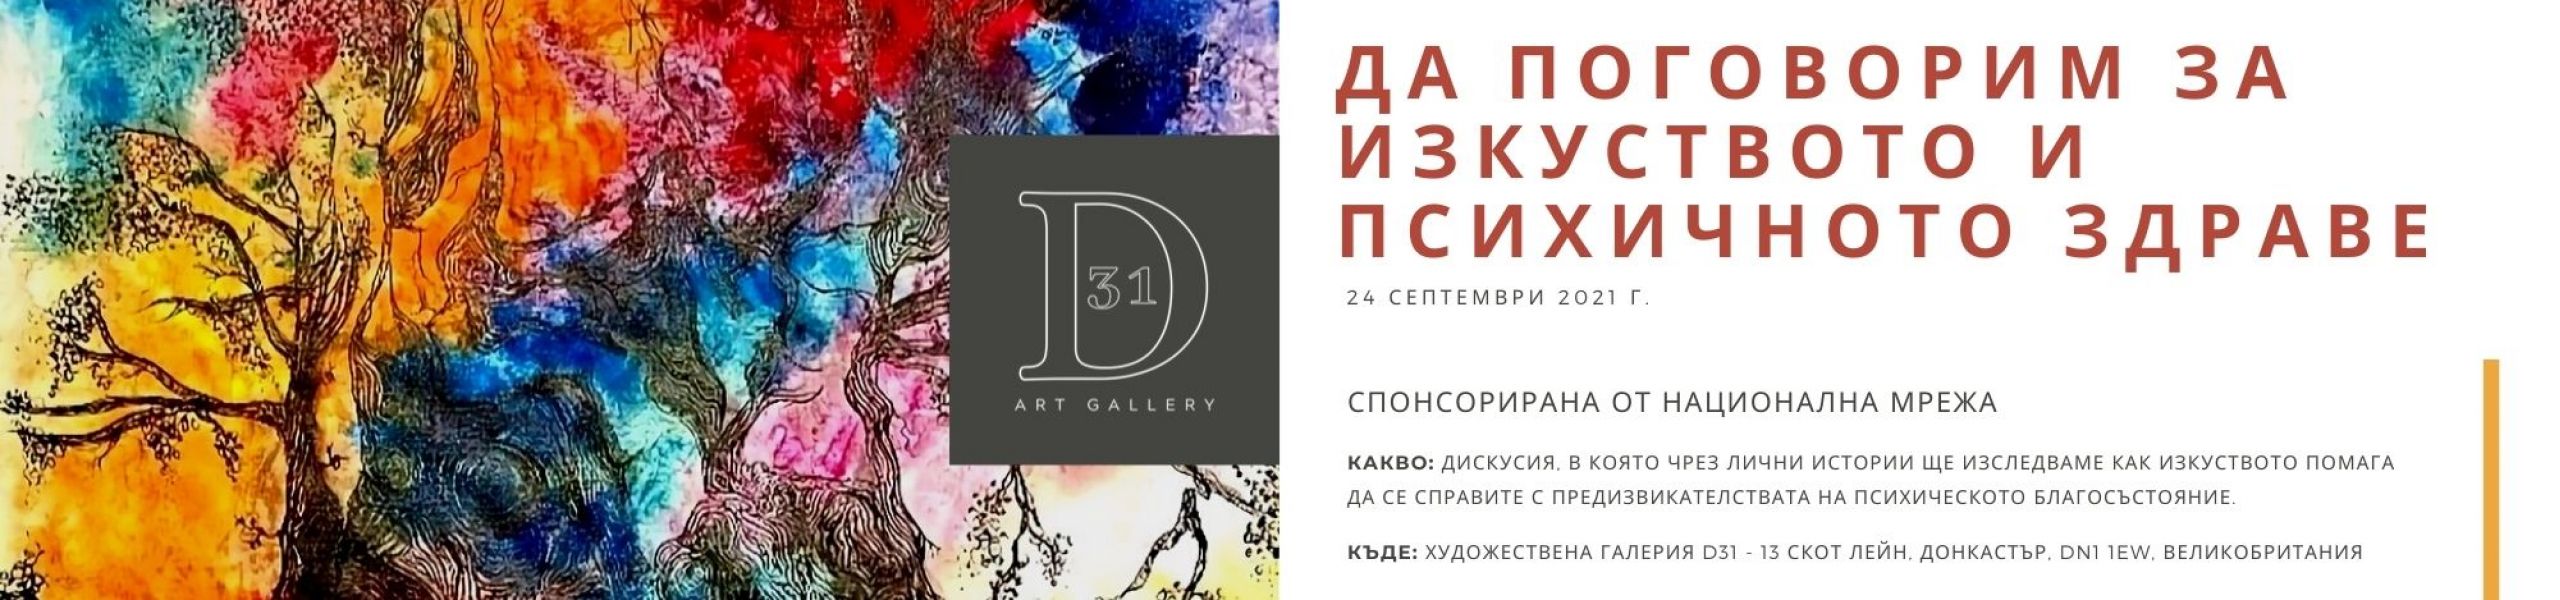 D31 Art Gallery - Elisa Neri